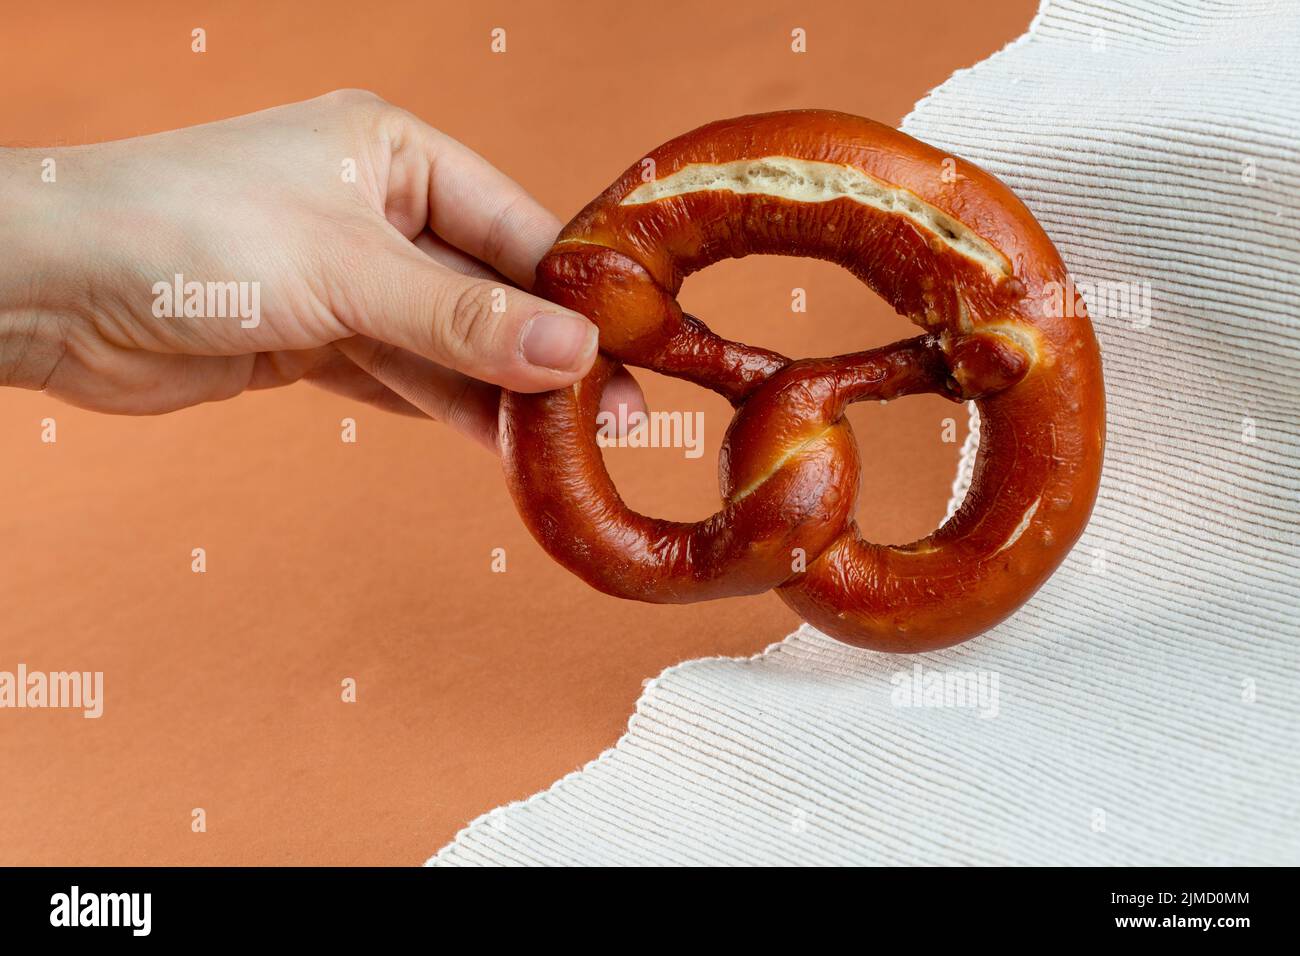 Panadero femenino irreconocible que muestra un delicioso pretzel recién horneado con corteza oscura servido sobre tejido estriado sobre fondo marrón Foto de stock